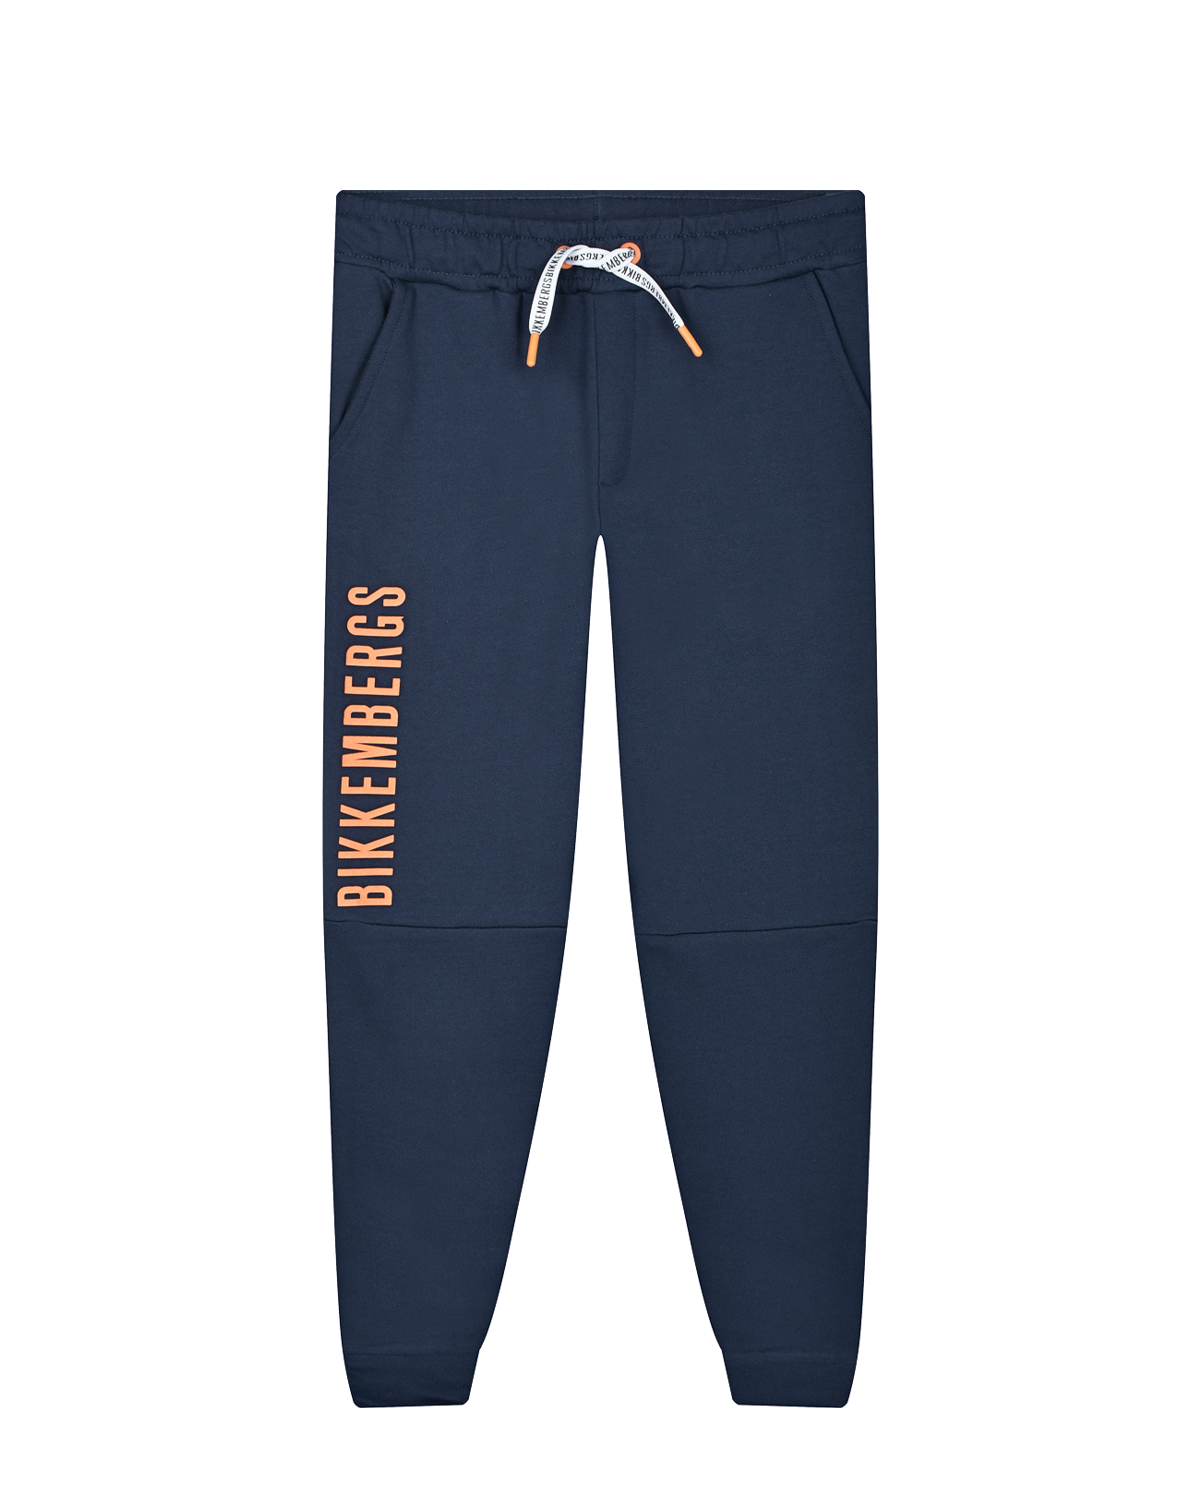 Синие спортивные брюки с оранжевым лого Bikkembergs детские, размер 116, цвет синий